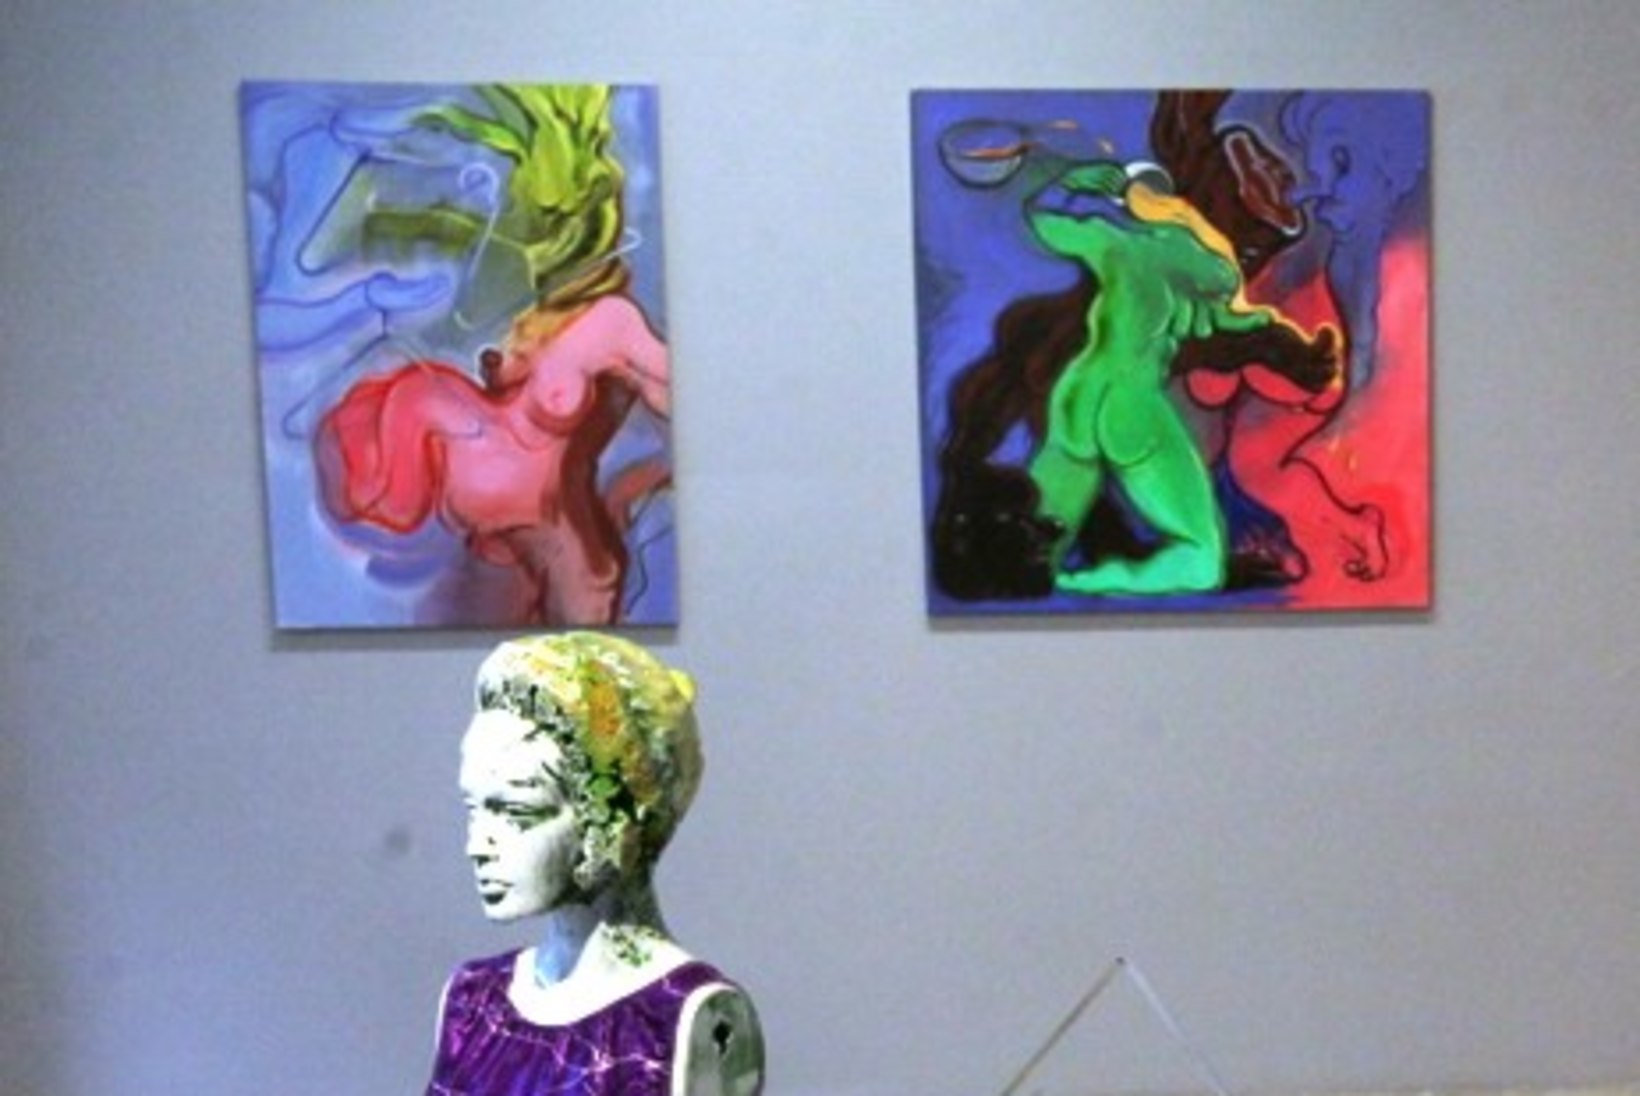 PILDID | Staarkunstnik Jüri Arrak käis koos oma noore elukaaslasega uudistamas "hullu" kunstinäitust, mis on alla 18-aastastele keelatud